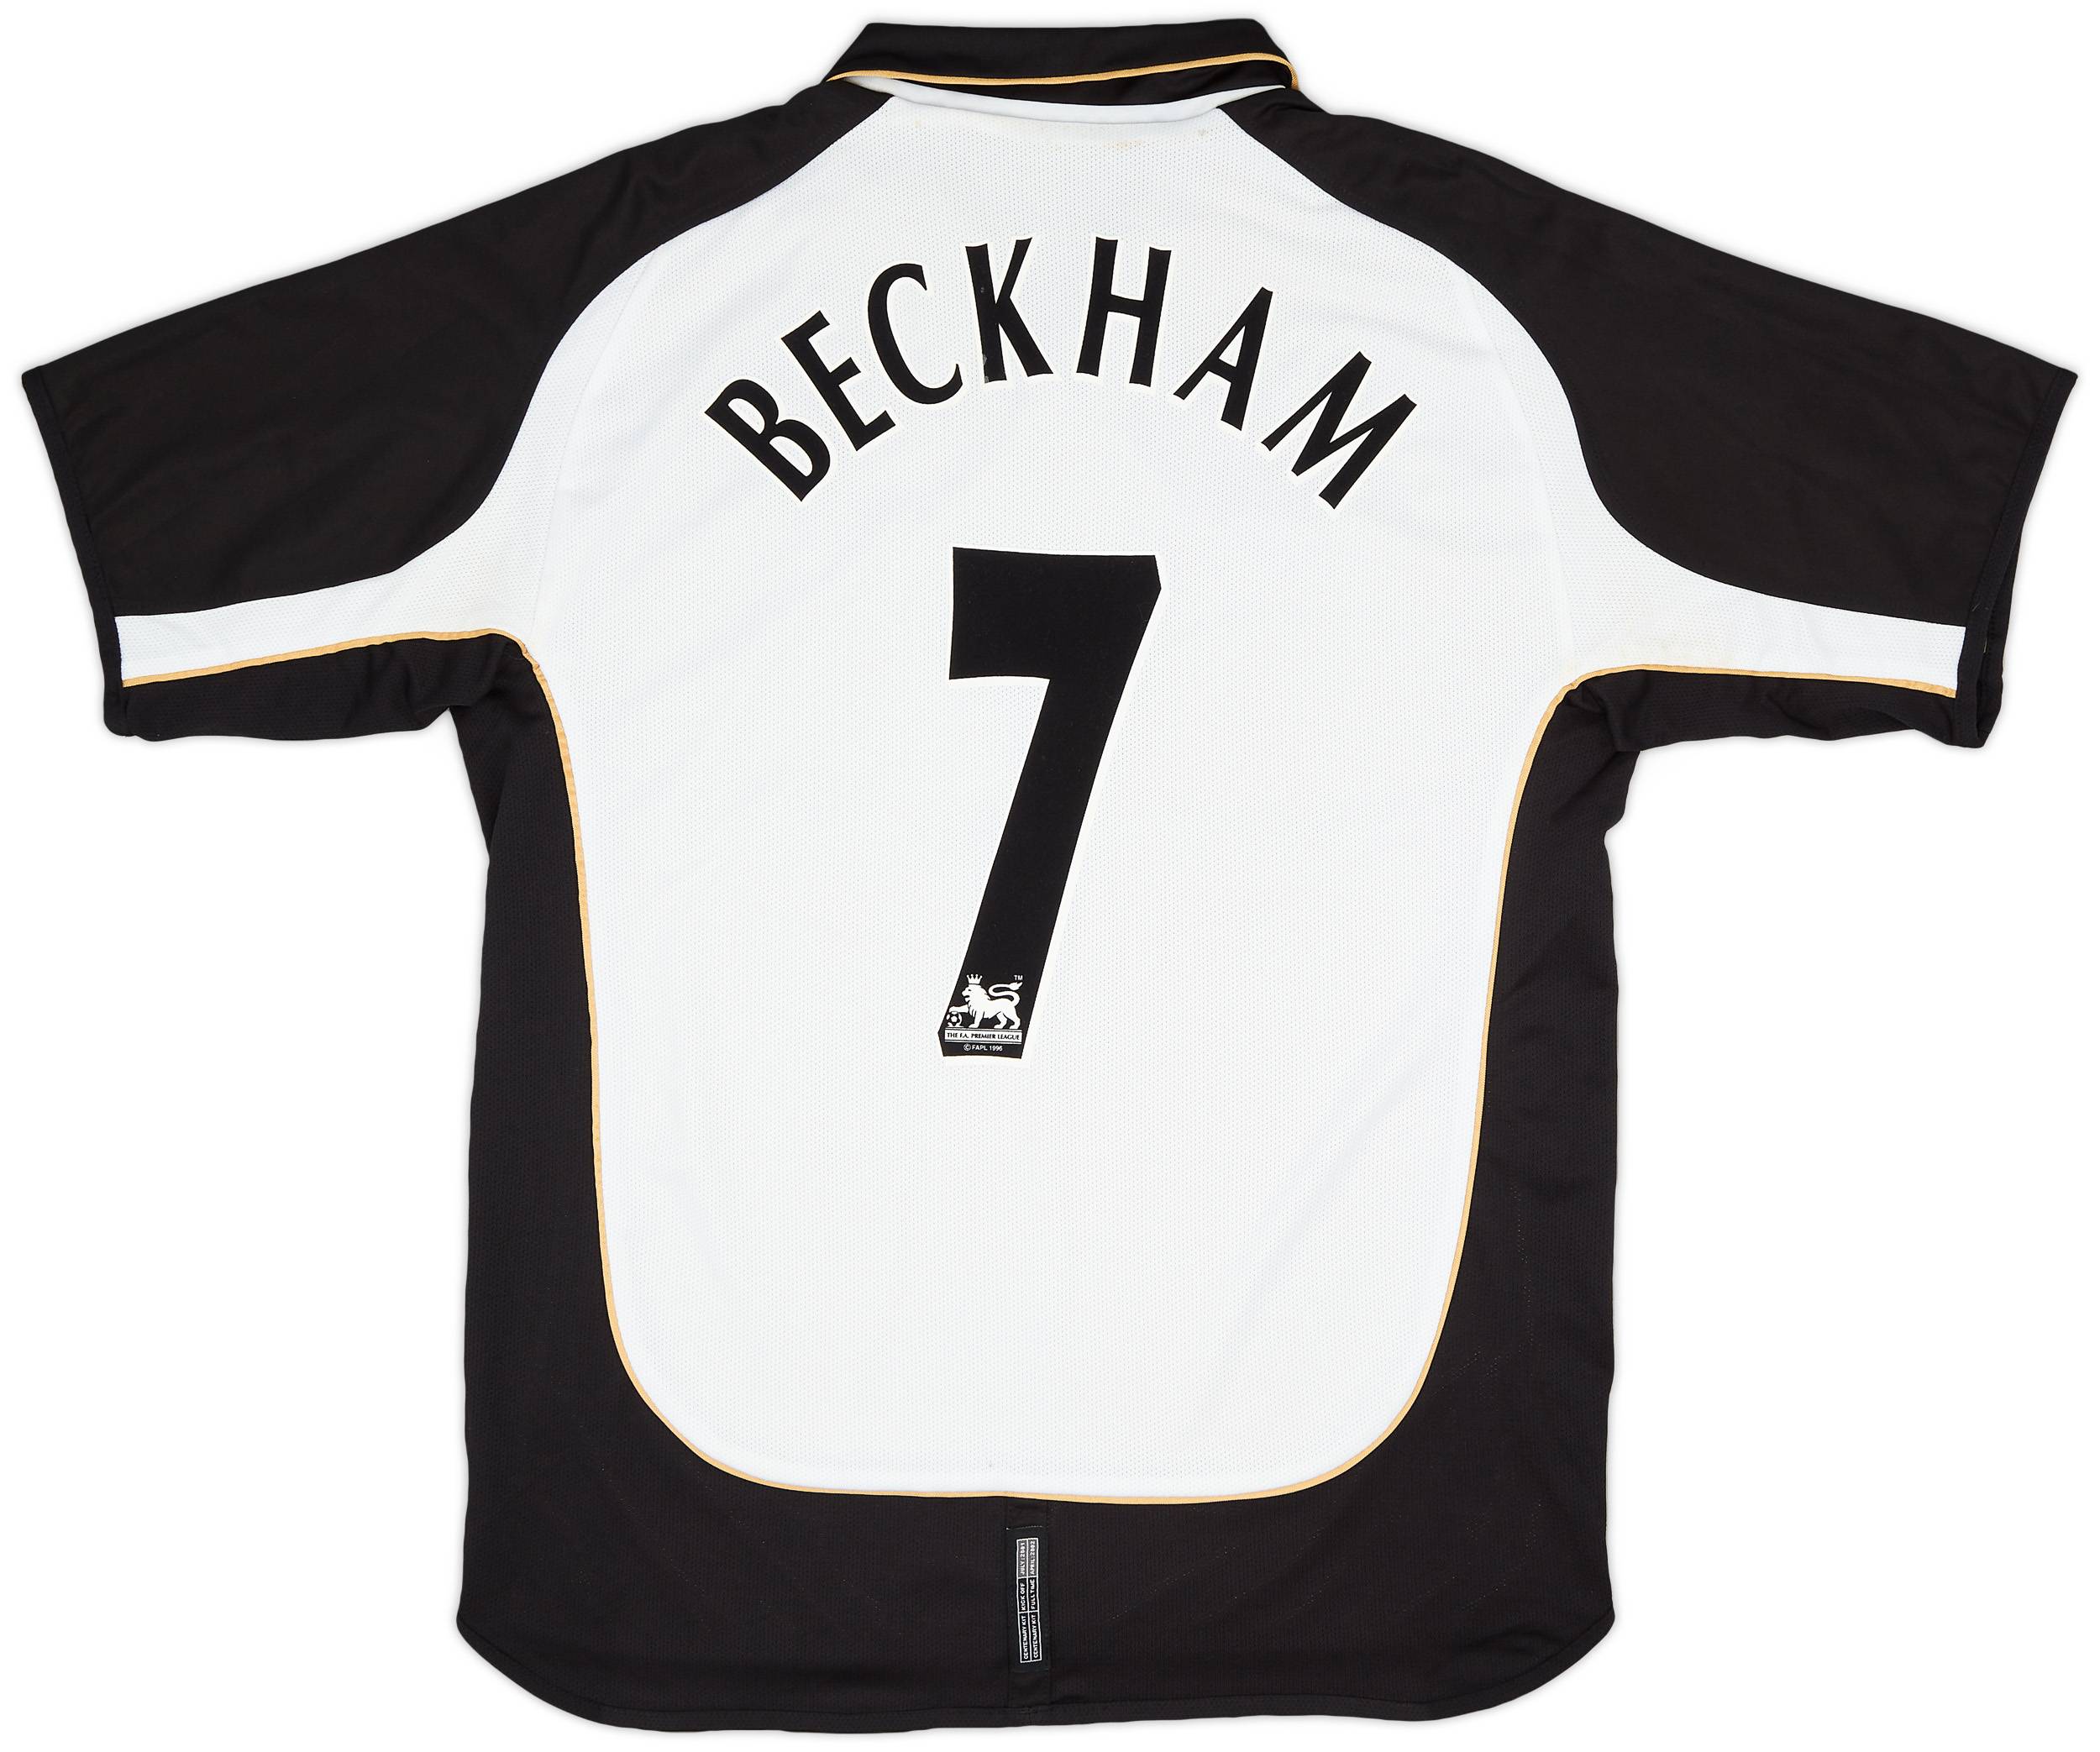 2001-02 Manchester United Centenary Away/Third Shirt Beckham #7 - 7/10 - (L)